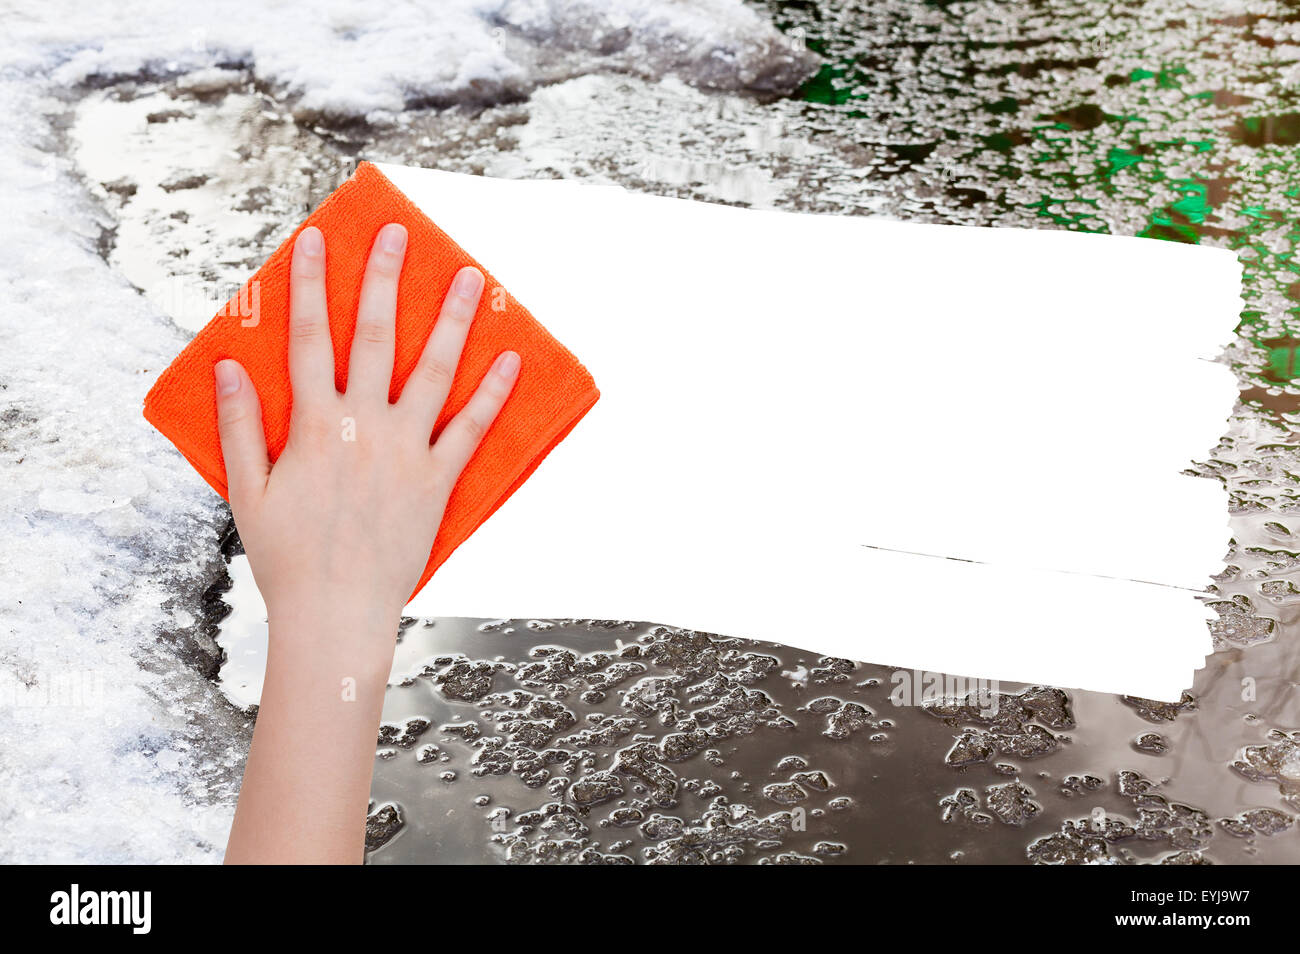 Wetter-Konzept - Hand löscht Schneeschmelze durch orange Lappen aus Bild und weißem leeren textfreiraum erscheinen Stockfoto